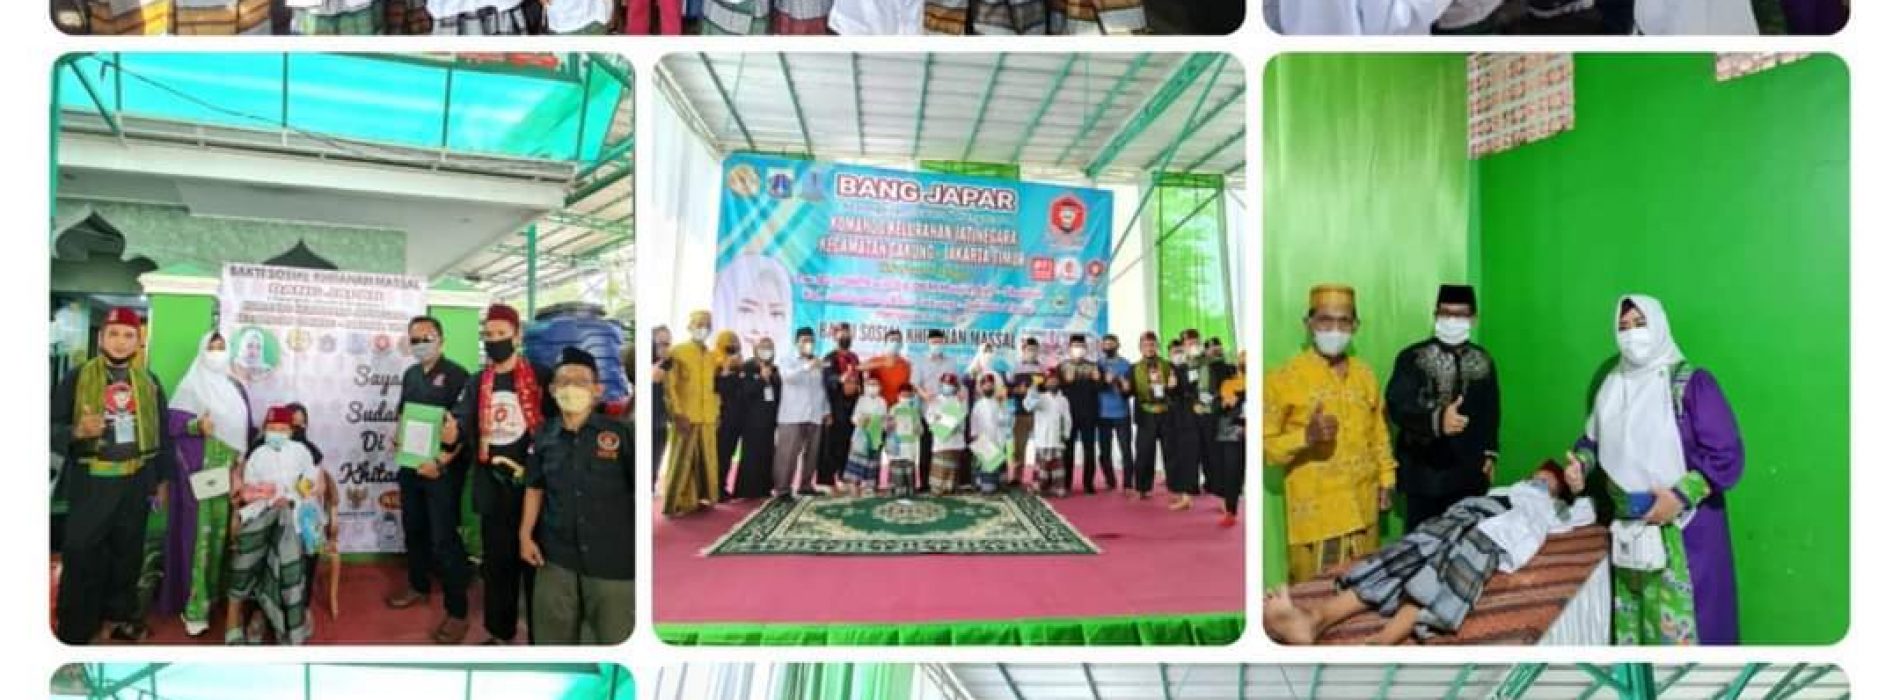 Walikota & Wakil Walikota Jaktim Apresiasi Kegiatan Fahira Idris dan Bang Japar : Selamat & Sukses Bakti Sosial Sunatan Massal di Kelurahan Jatinegara Cakung Jakarta Timur.